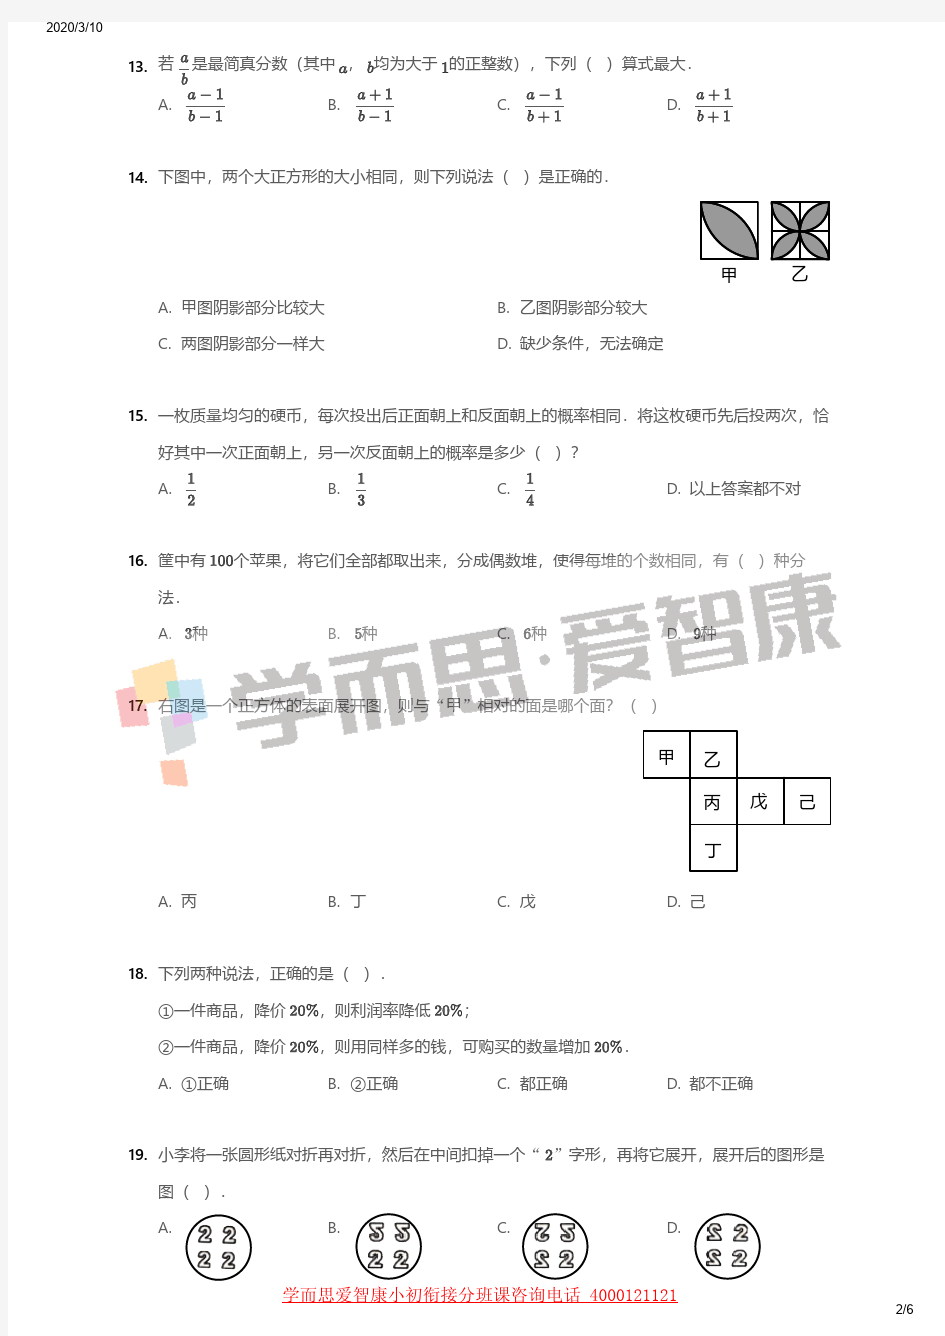 2019年北京西城区北京四中小升初数学试卷初一分班考